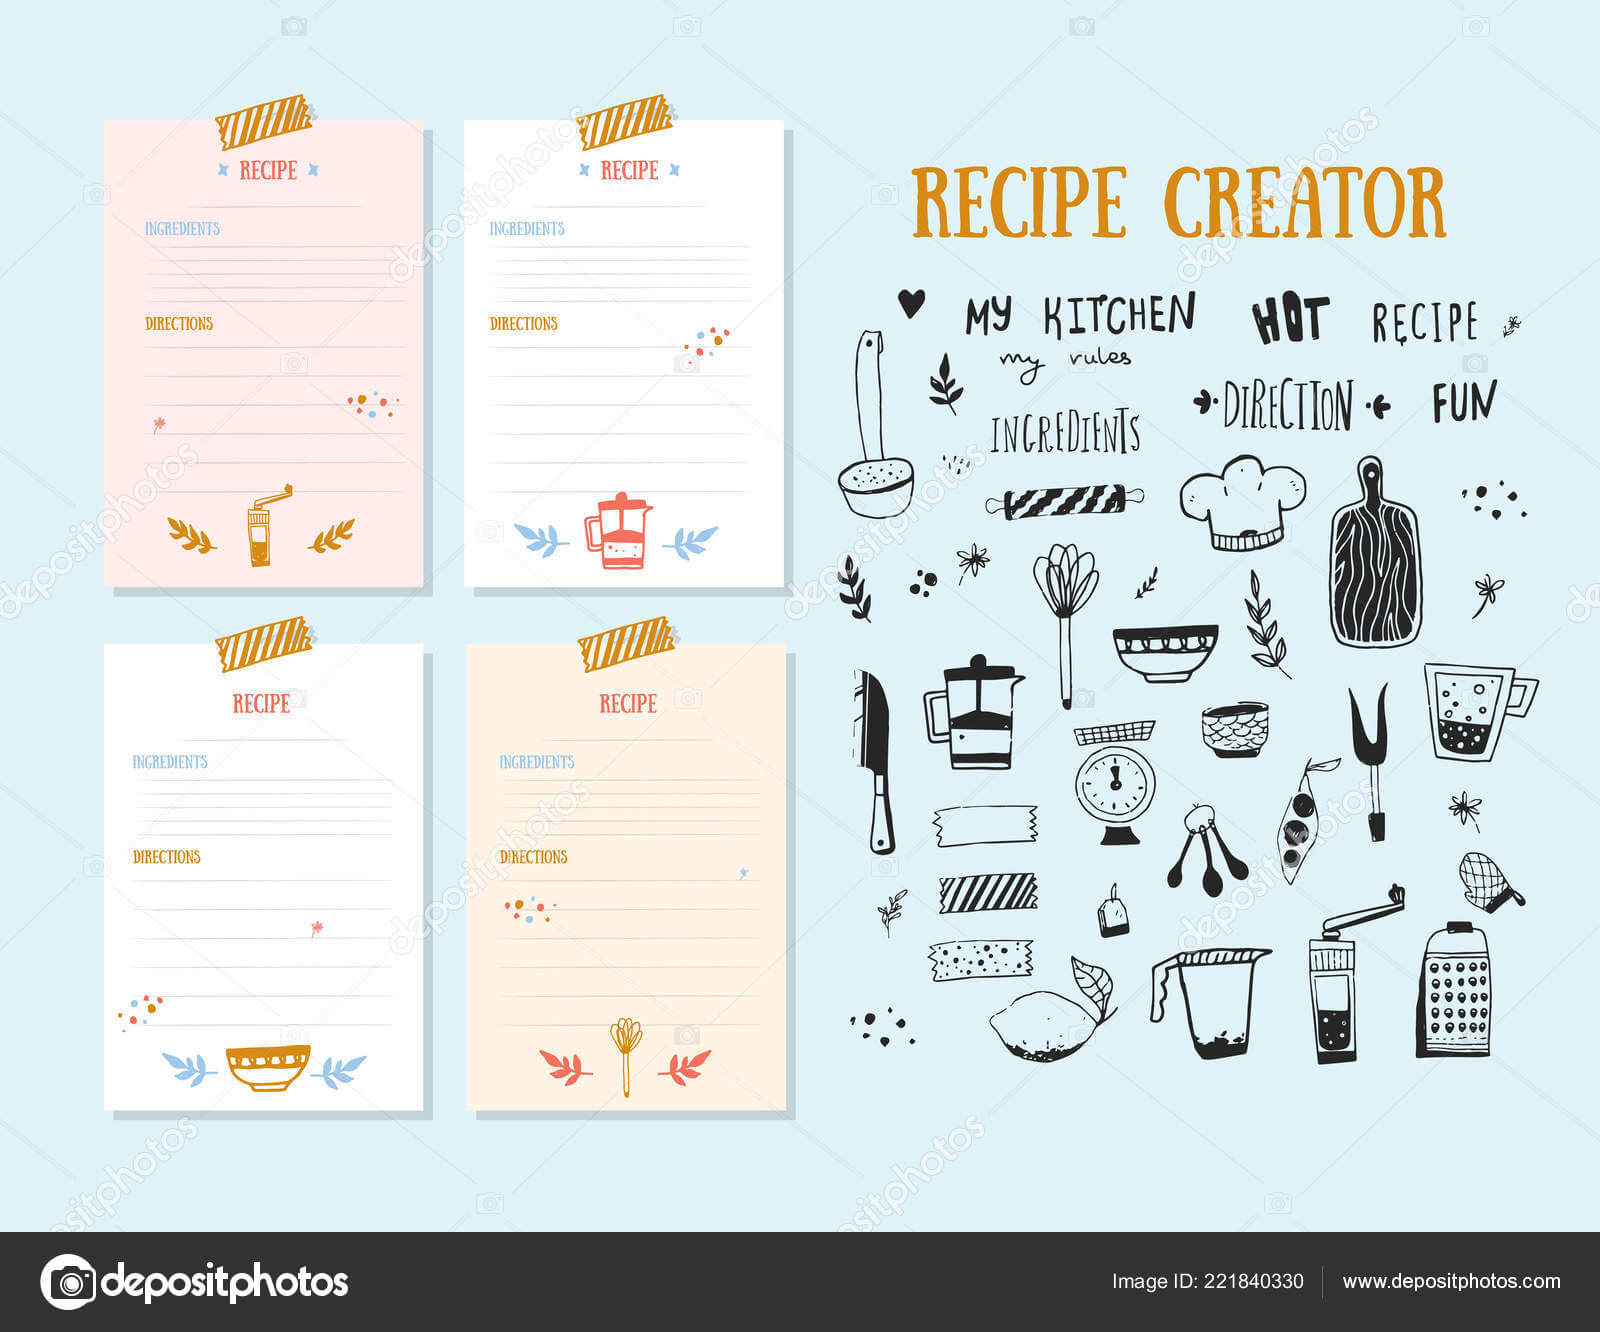 Cookbook Design Template | Modern Recipe Card Template Set With Recipe Card Design Template